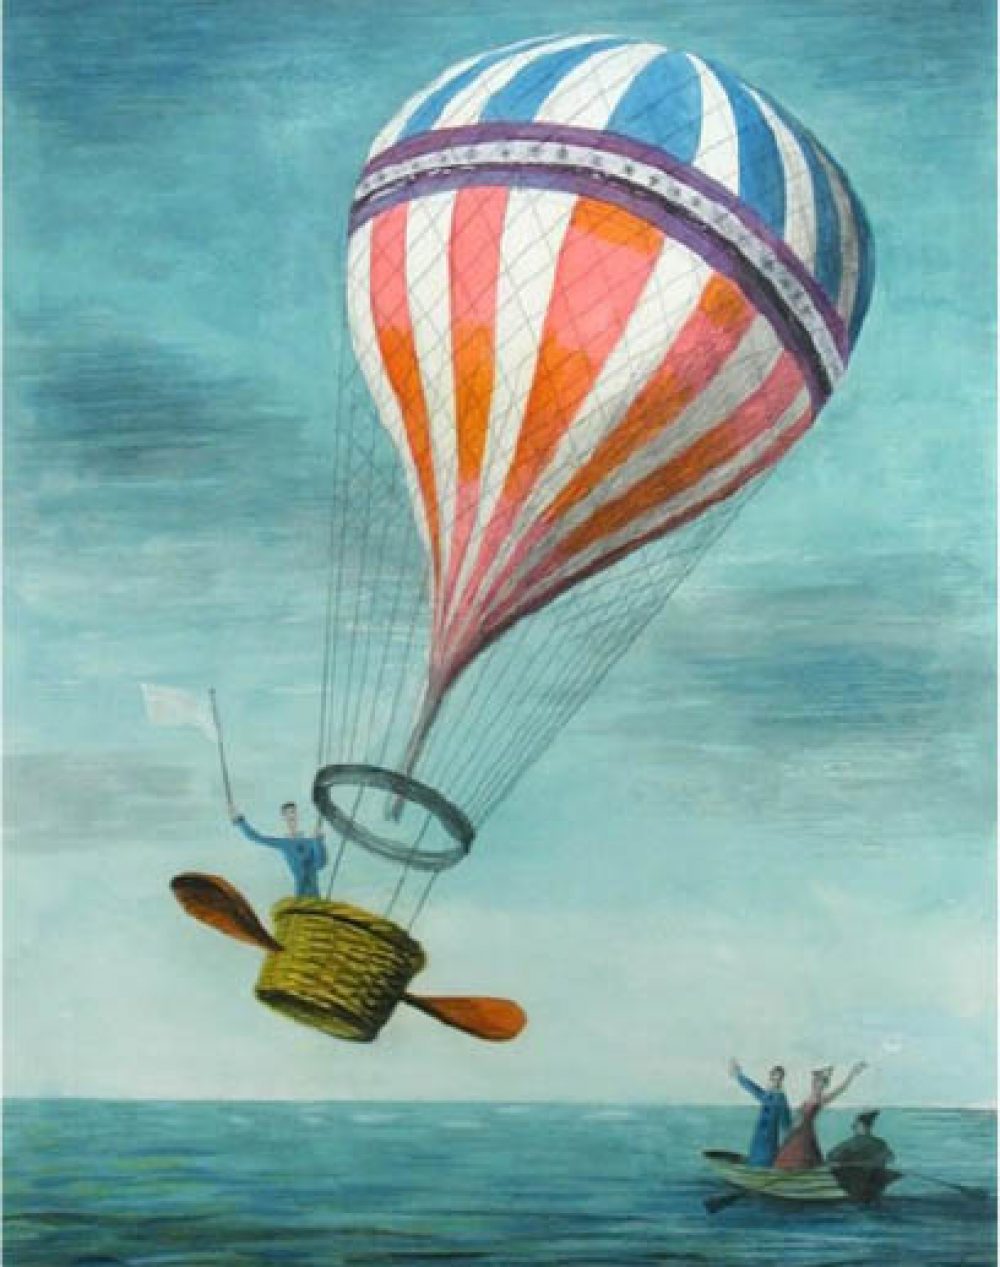 Barbara-Jones-Balloon